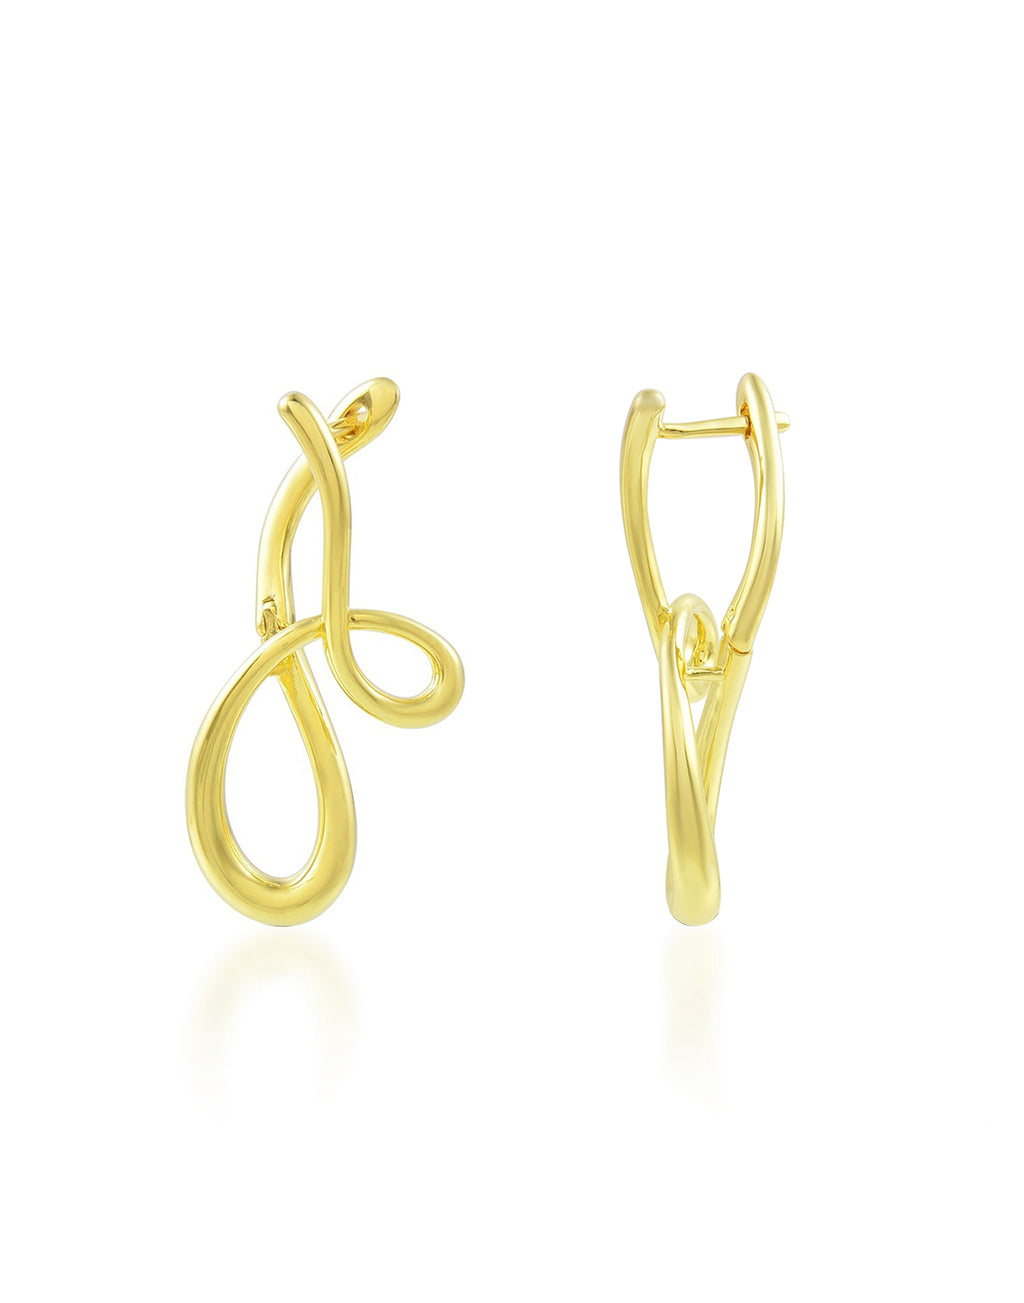 Fancy Shape Earrings - Statement Earrings - Gold-Plated & Hypoallergenic Jewellery - Made in India - Dubai Jewellery - Dori